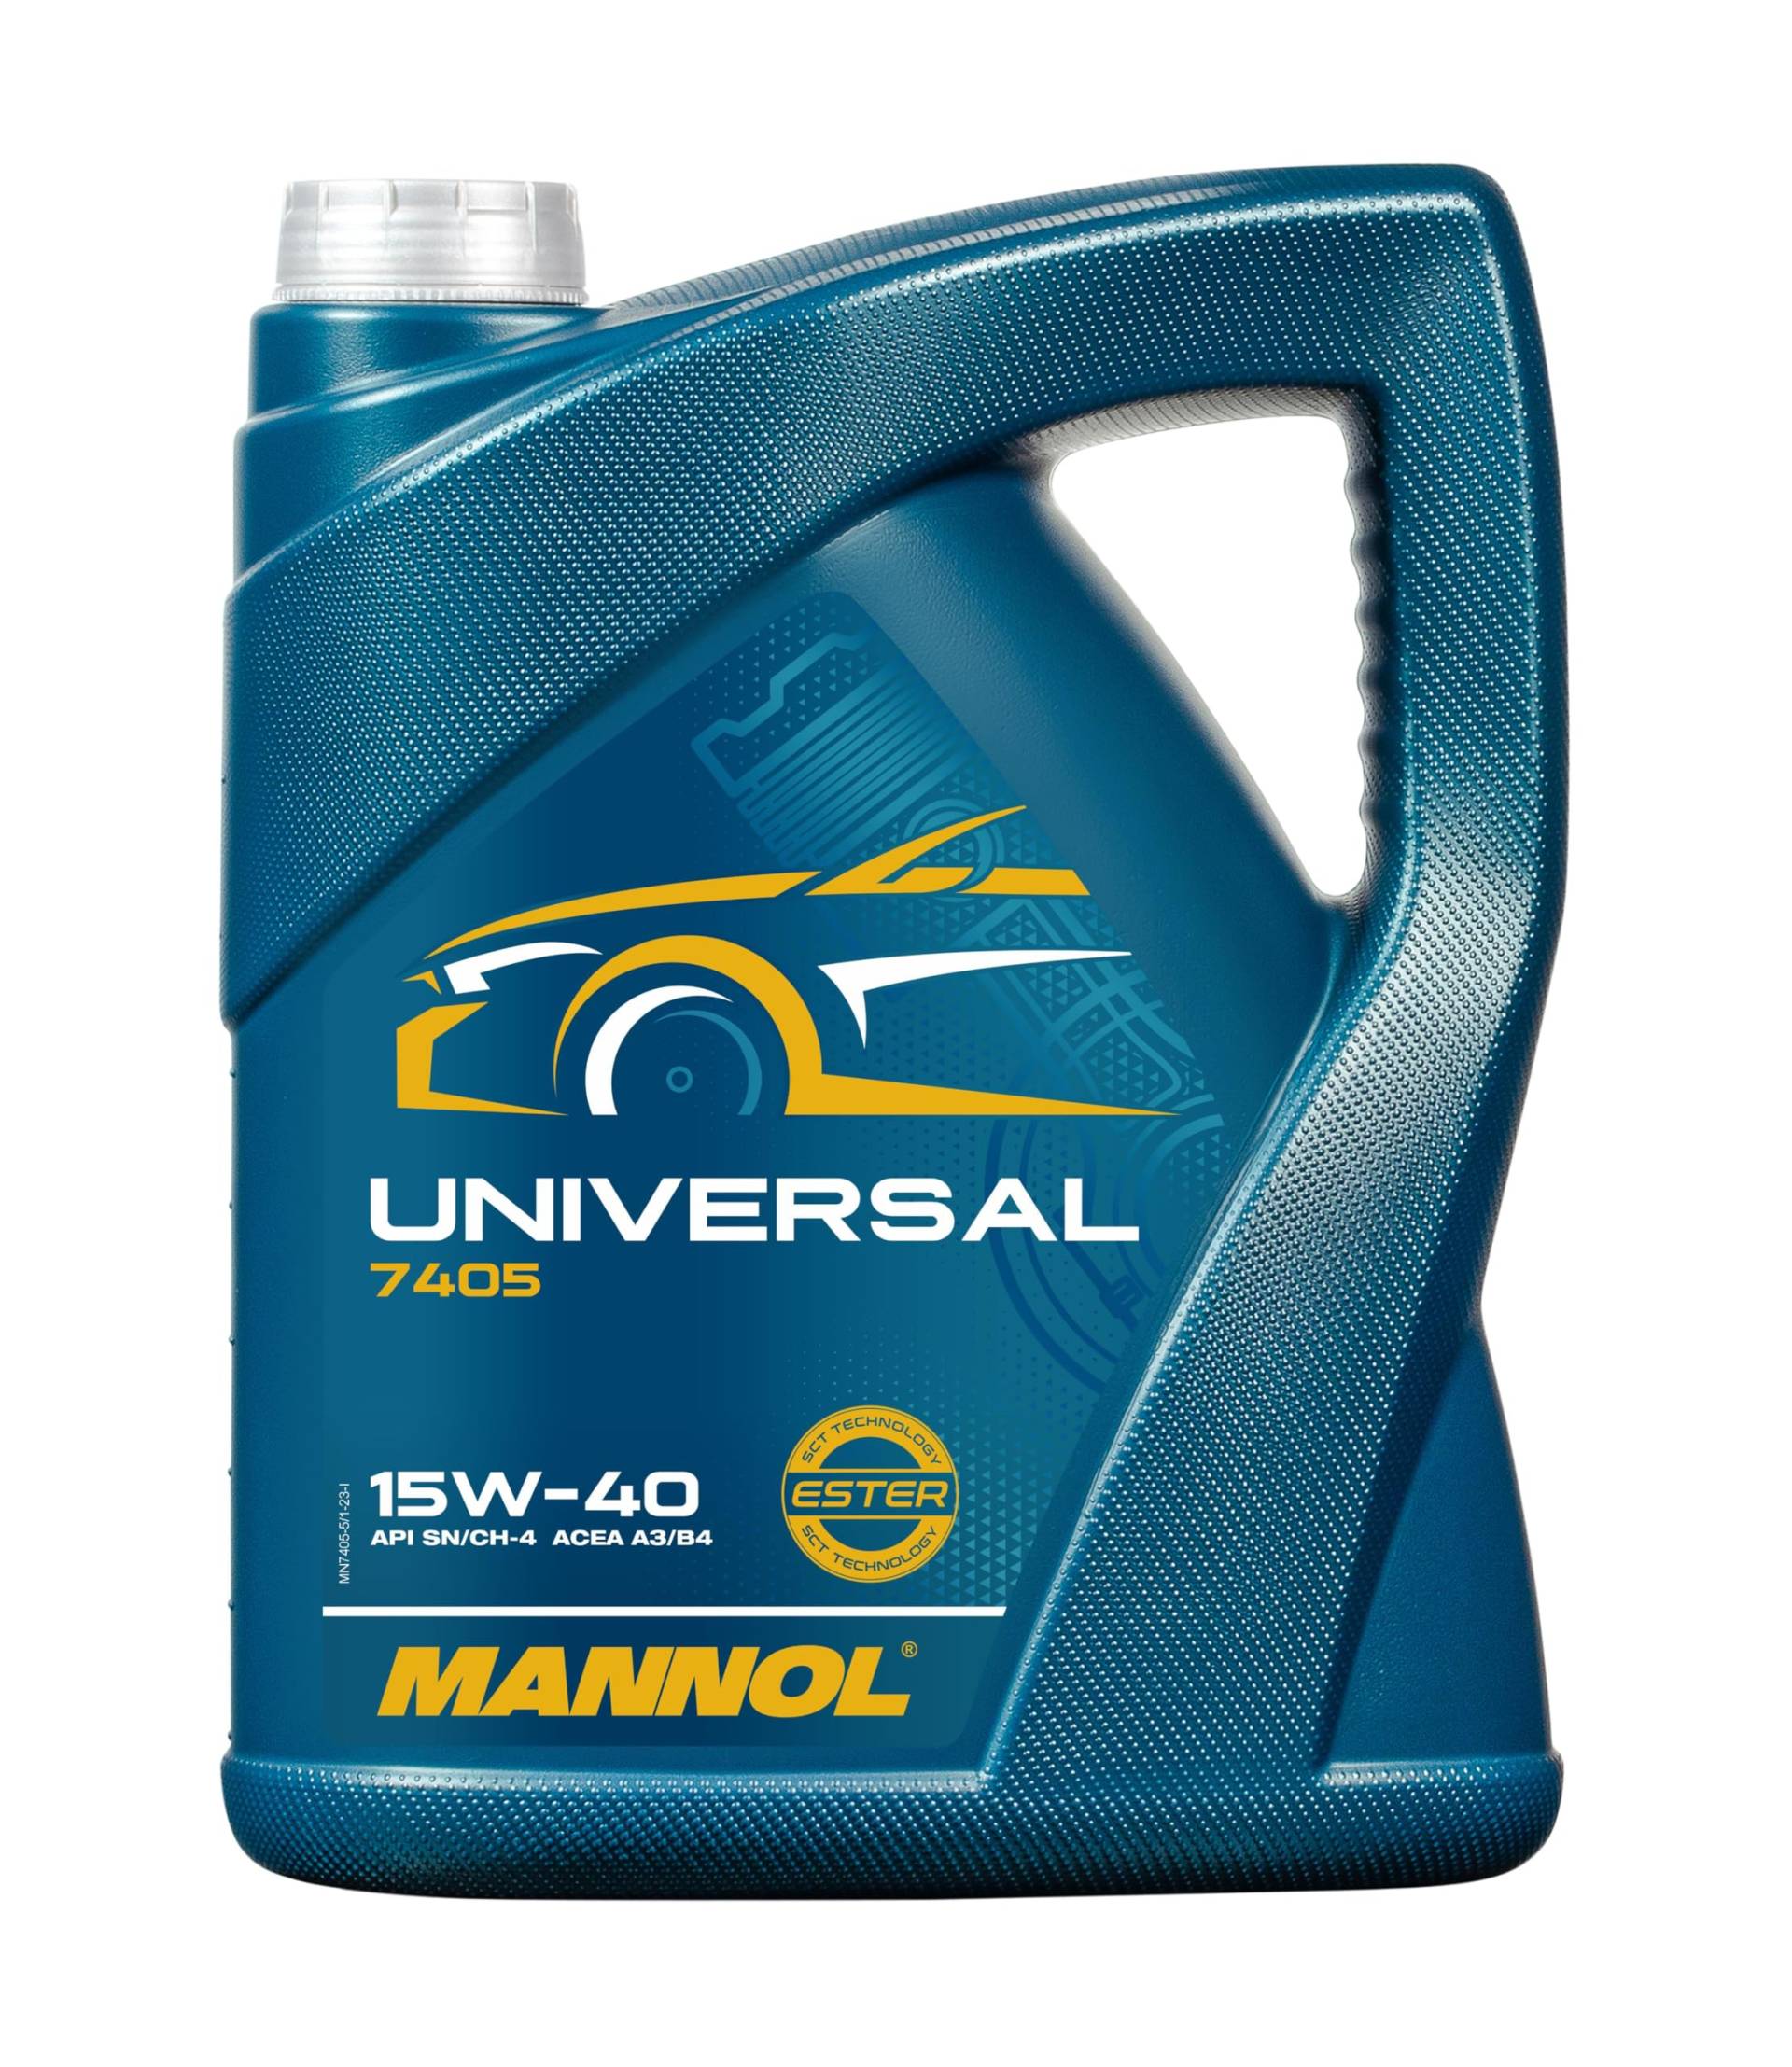 MANNOL Universal 15W-40 API SG/CD Motorenöl, 5 Liter von MANNOL